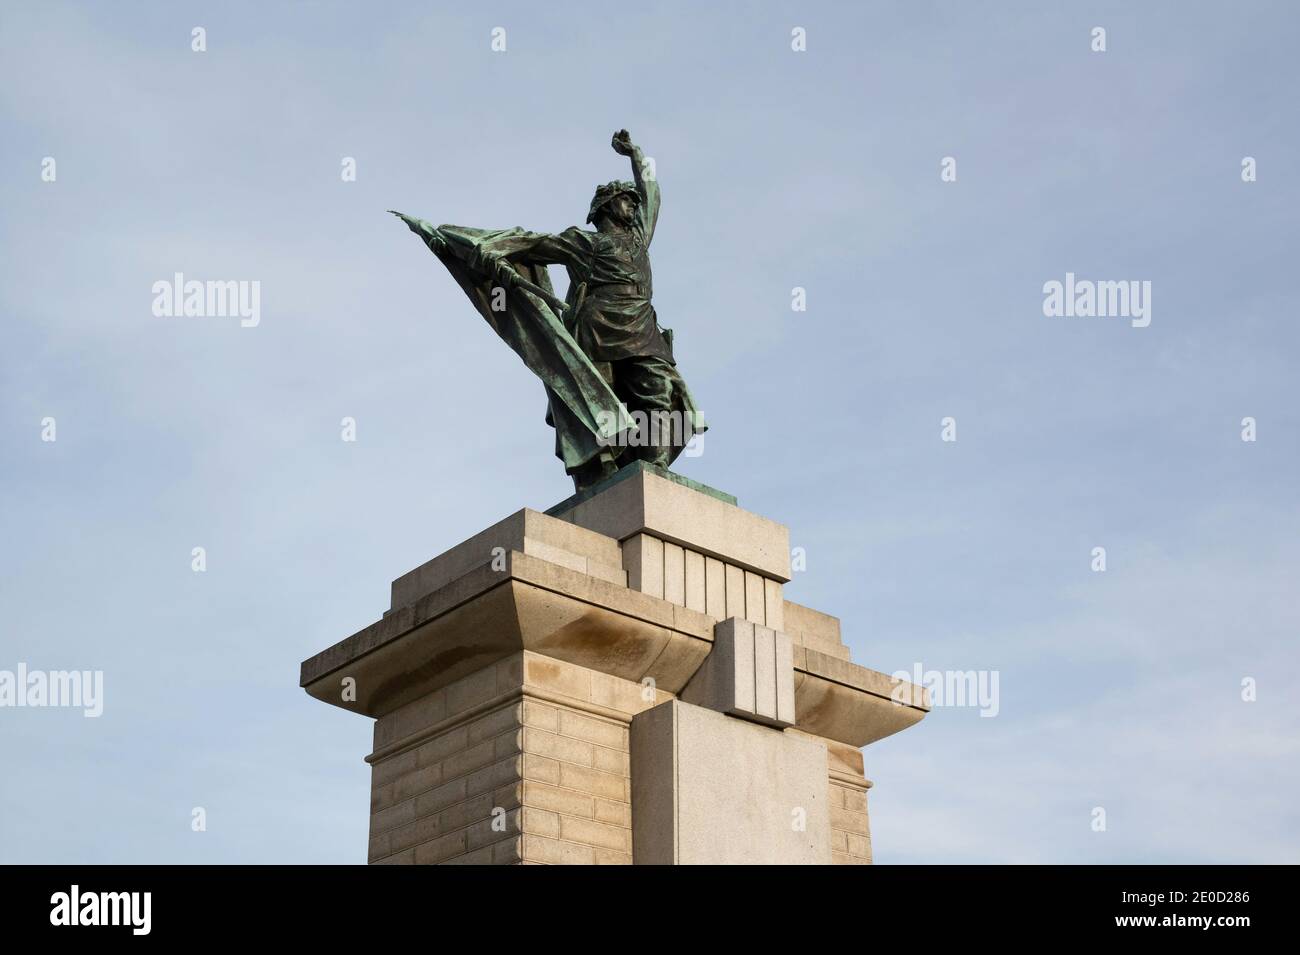 Mémorial de la libération, Brno, République tchèque / Tchéquie - mémoire de guerre - statue et sculpture du soldat et combattant de l'armée rouge. Heorisme et posture héorique. Banque D'Images